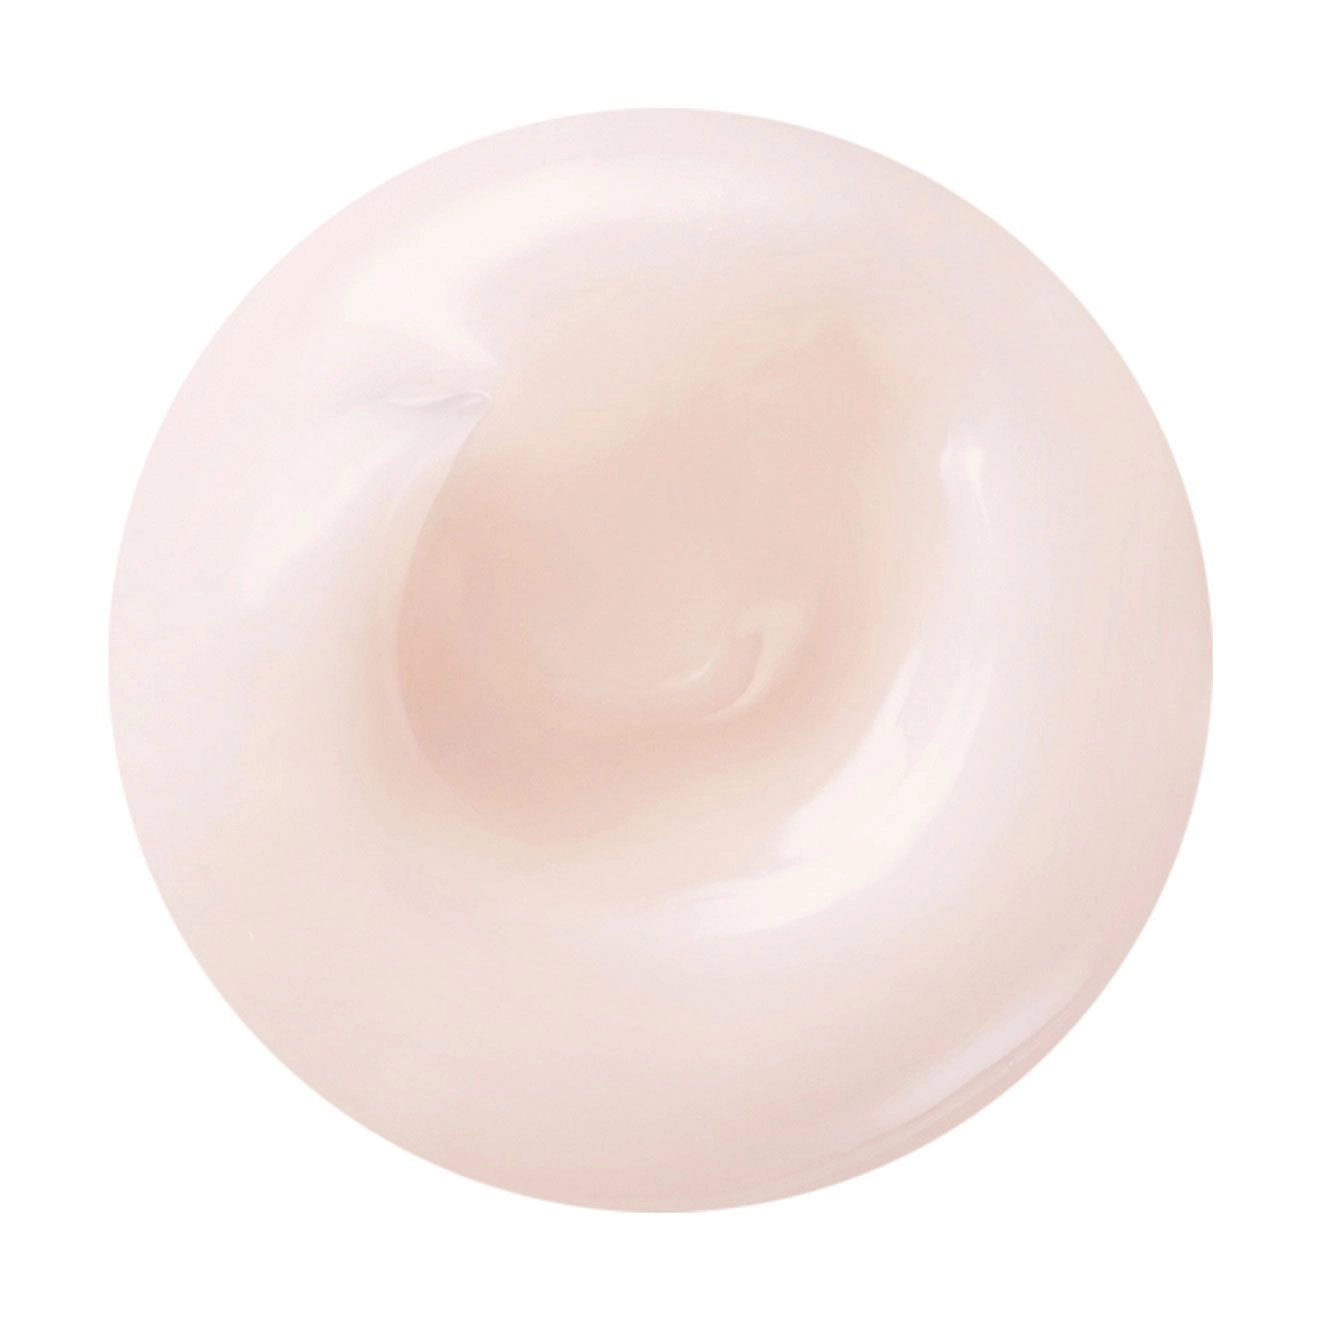 Осветляющий гель-крем для лица - Shiseido White Lucent Brightening Gel Cream, 50 мл - фото N2